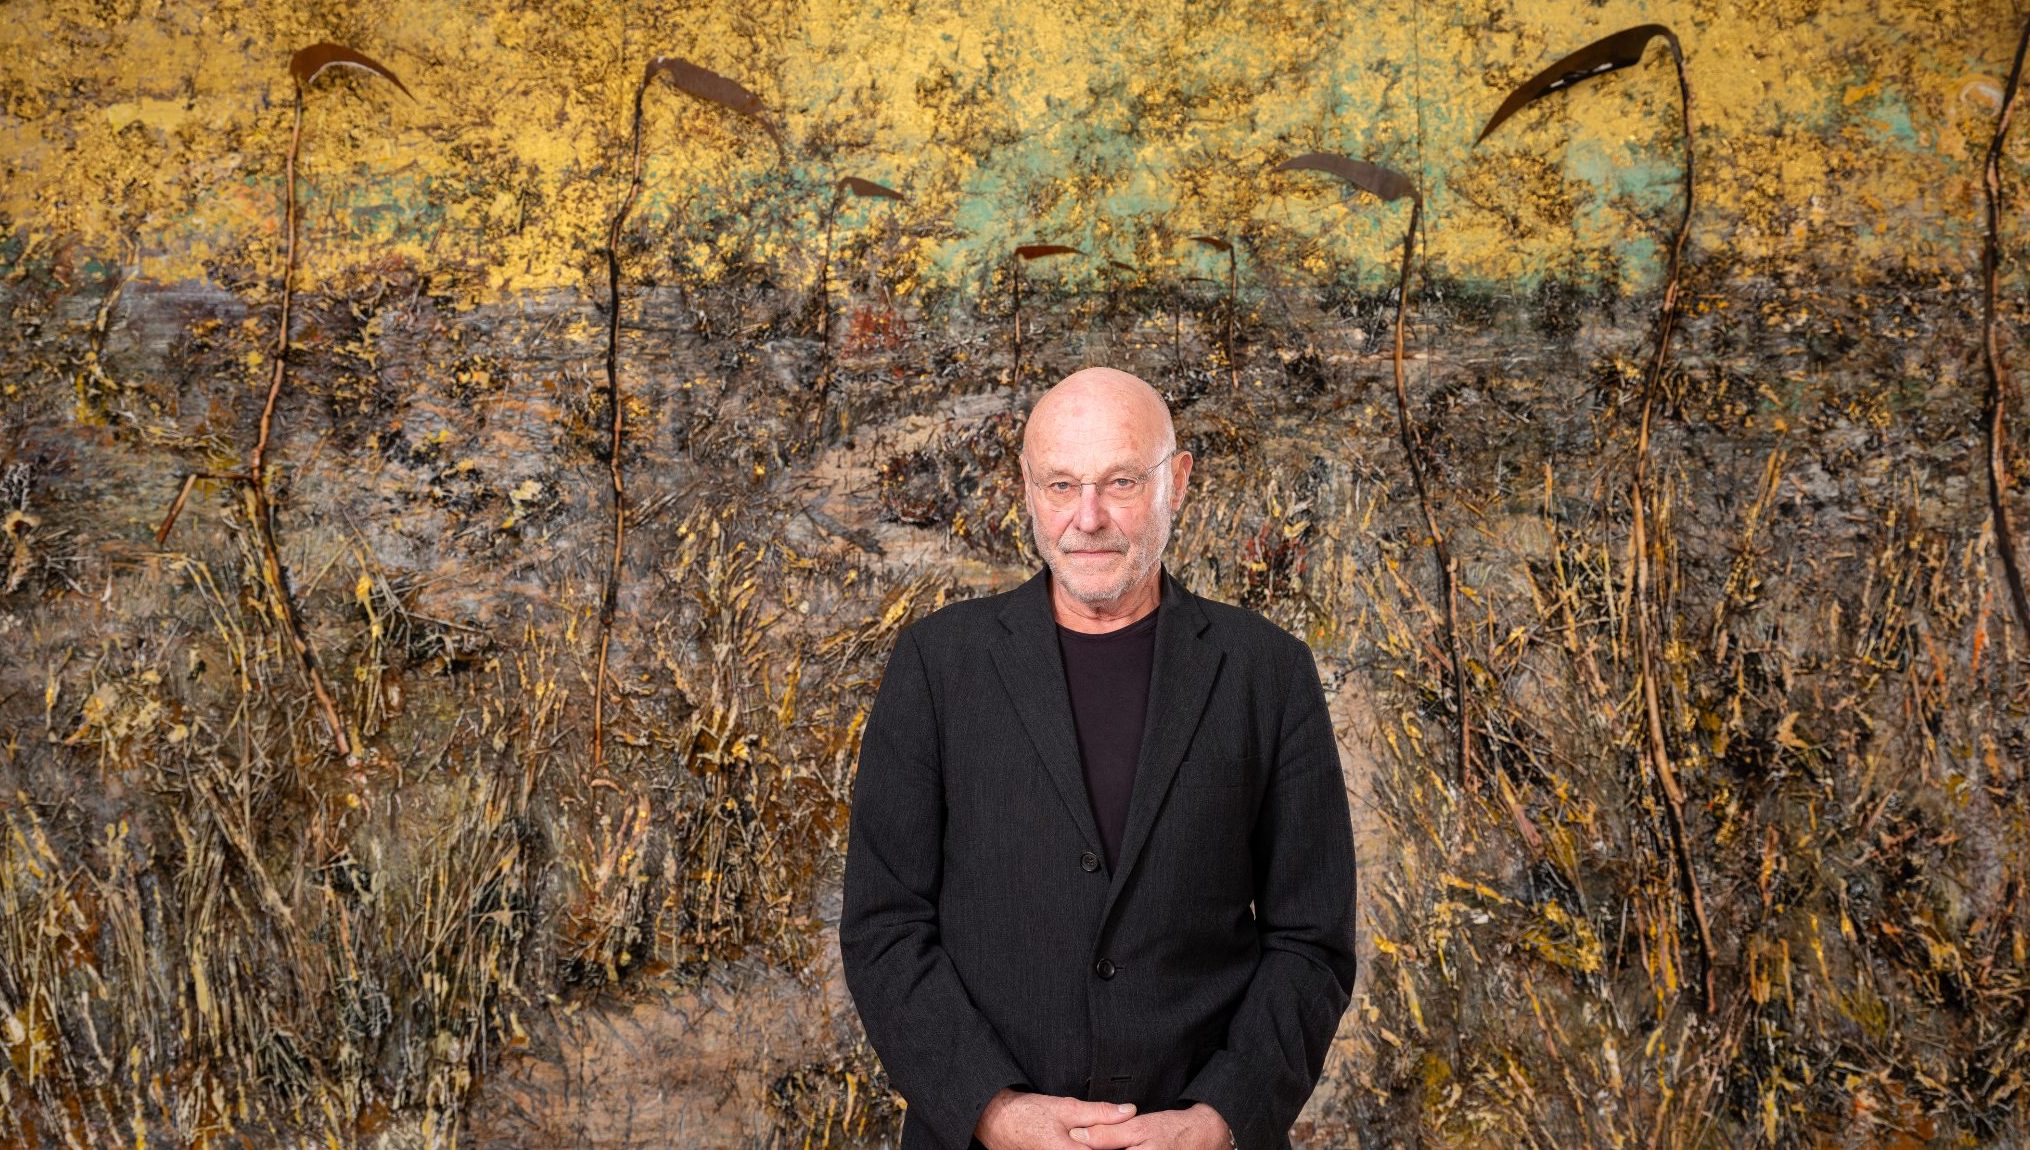 Anselm Kiefer, pittore e scultore tedesco di fama internazionale, protagonista di un documentario di Wim Wenders